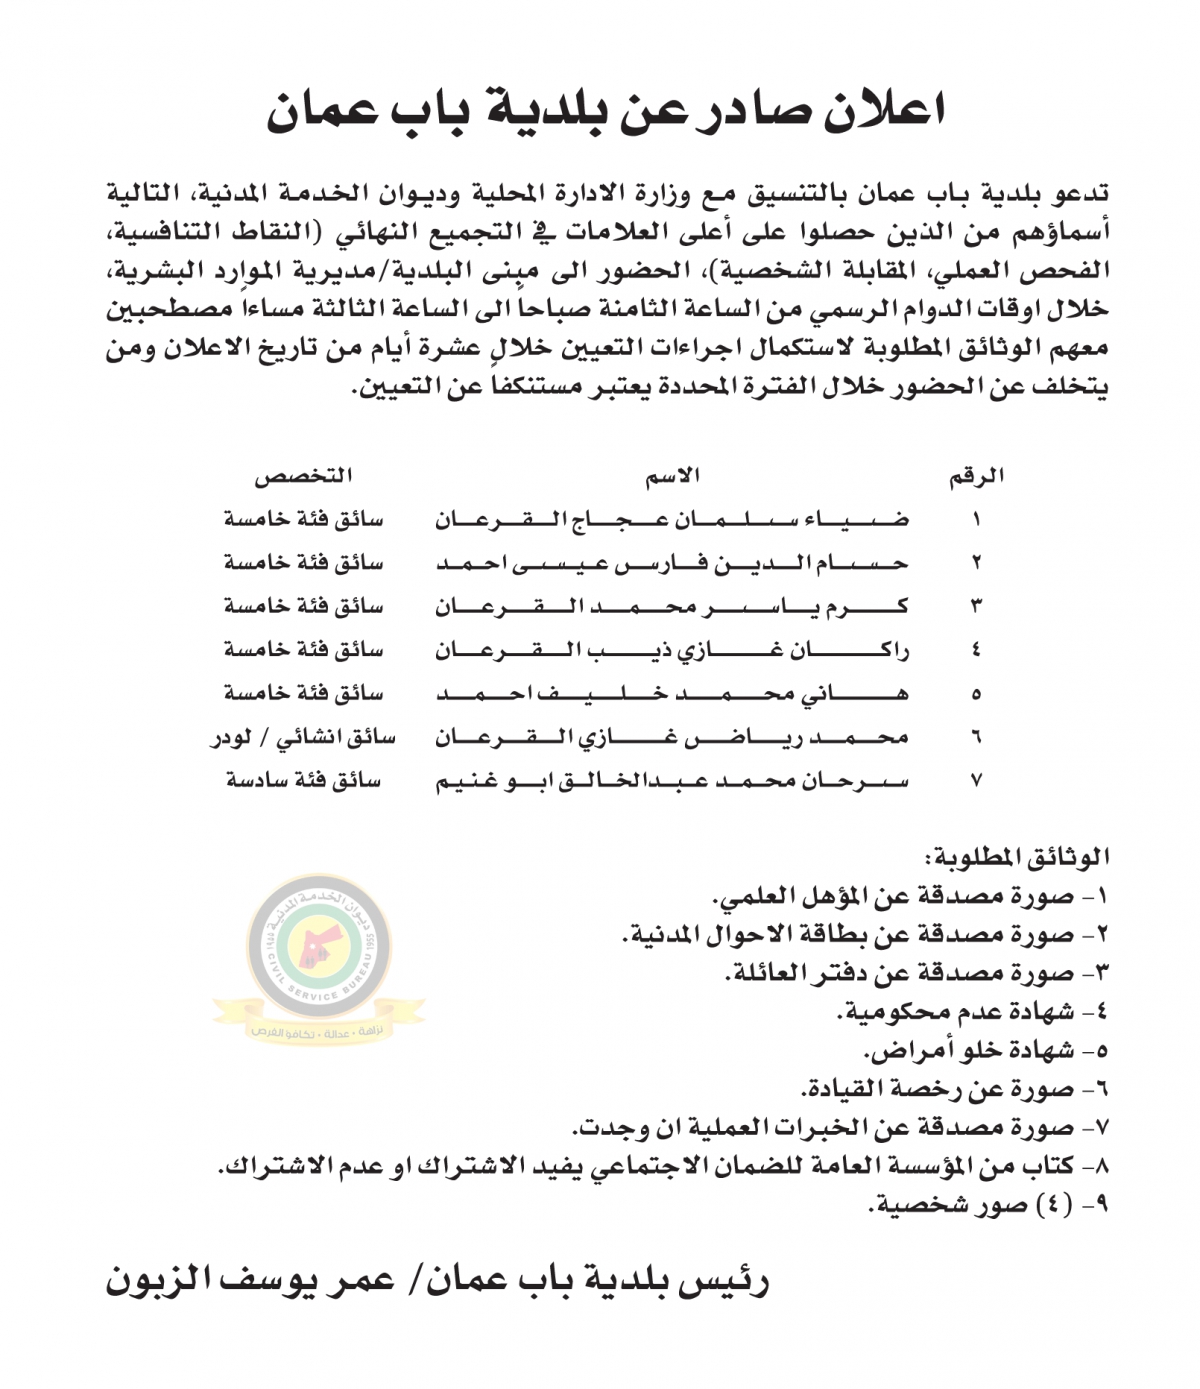 اعلان استكمال اجراءات التعيين صادرعن بلدية باب عمان